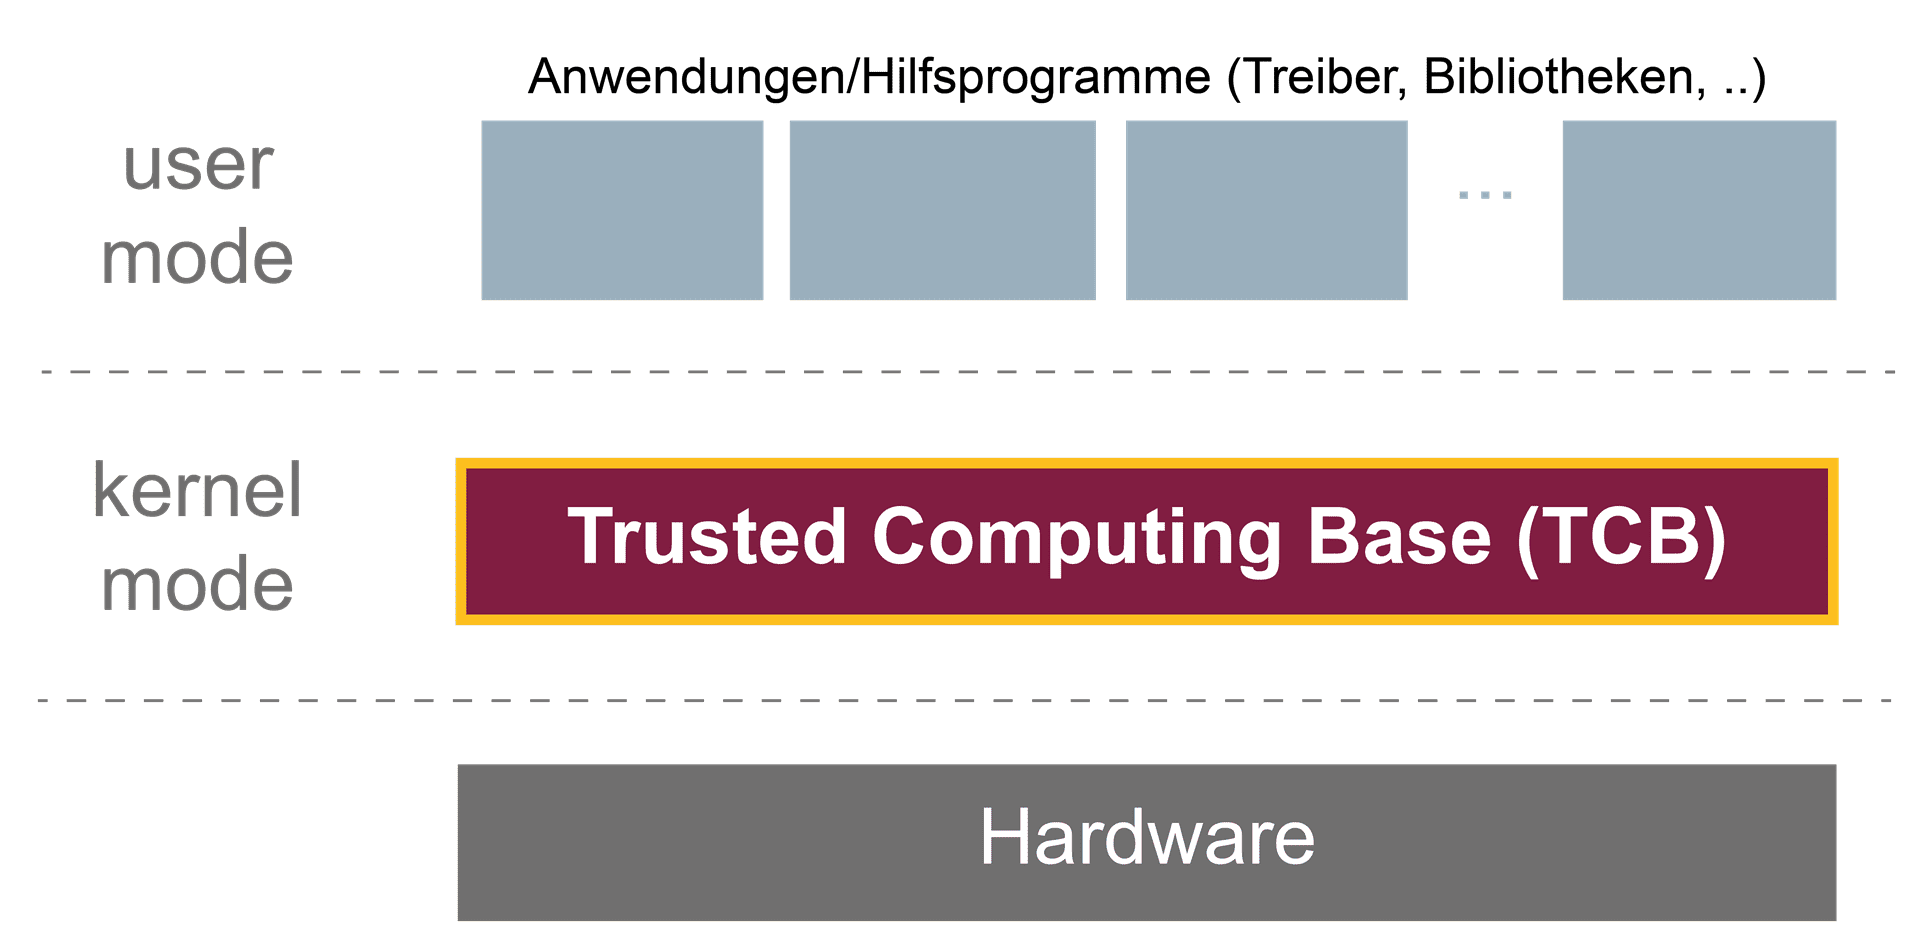 Trusted Computing Base (TCB) als verlässliches Sicherheitsfundament für weitere IT- und IT-Sicherheitskomponenten